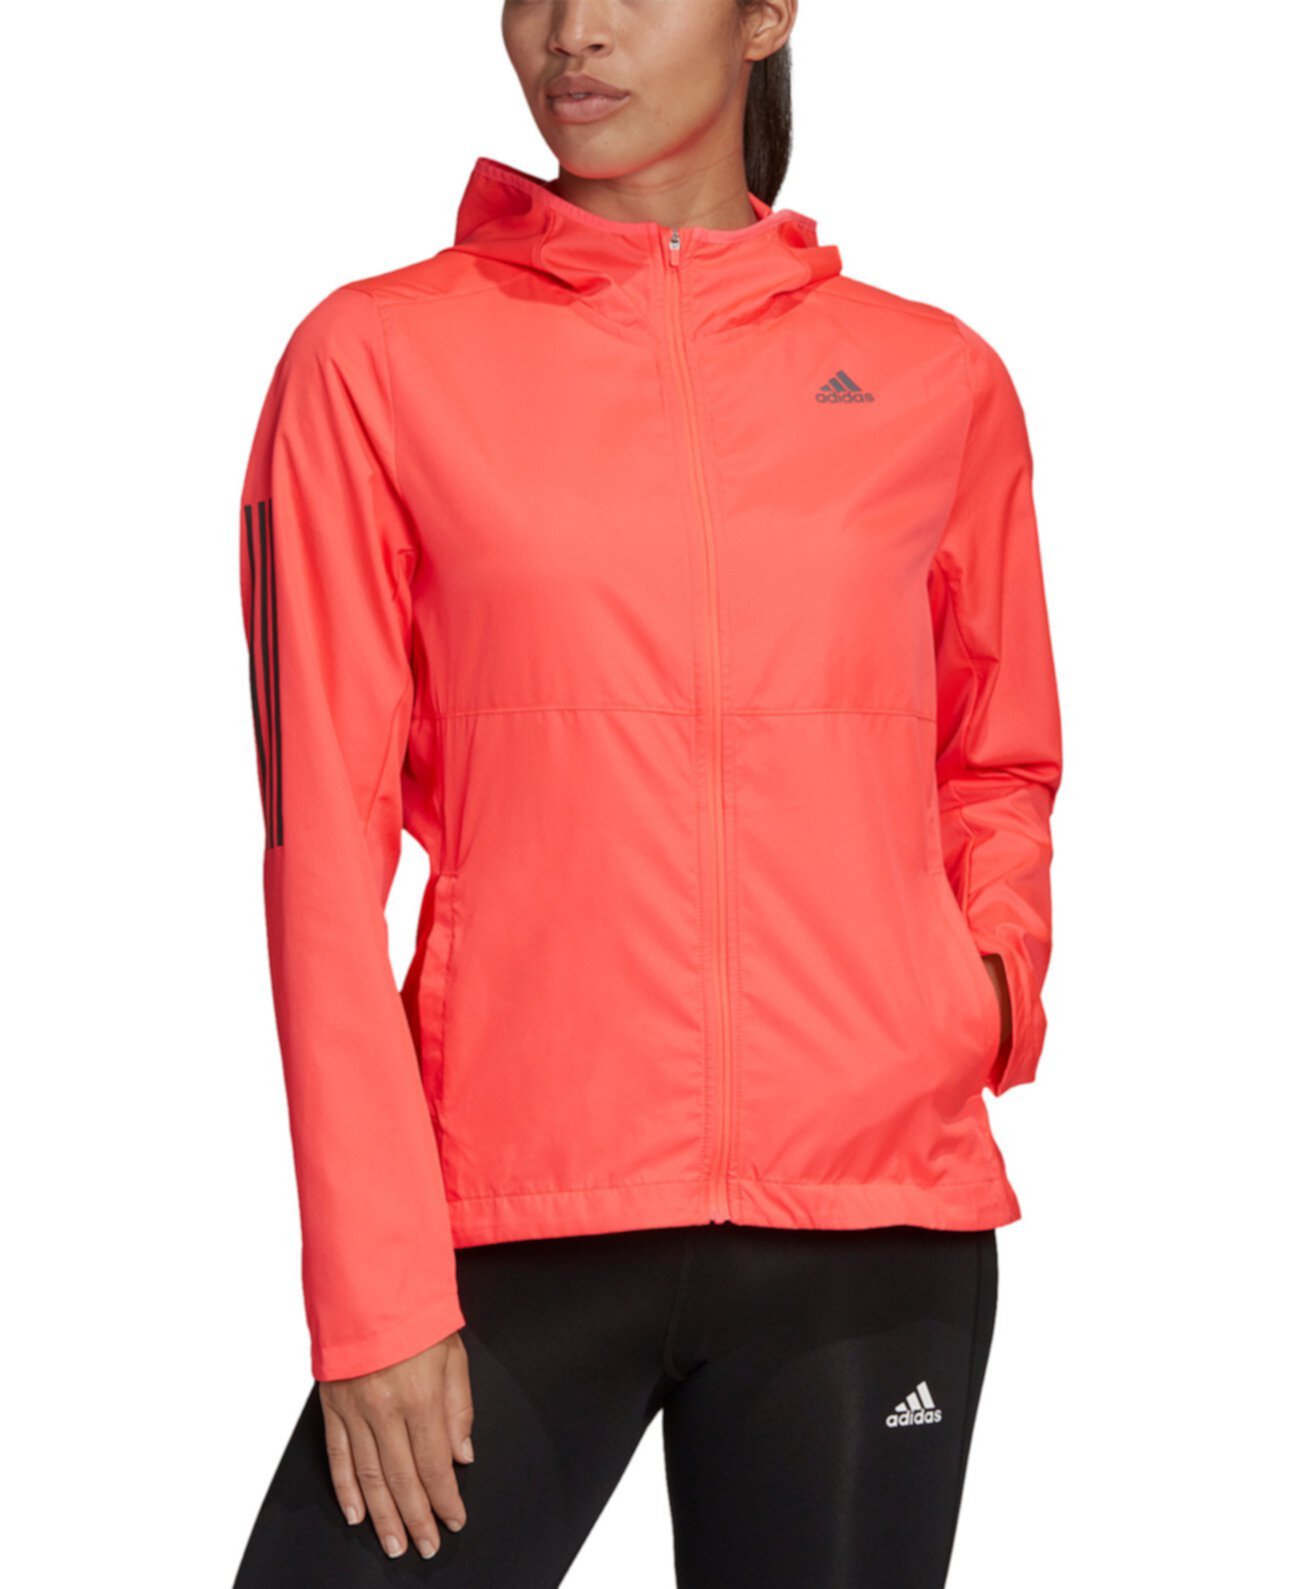 Женская ветровая куртка с молнией спереди Own the Run Adidas